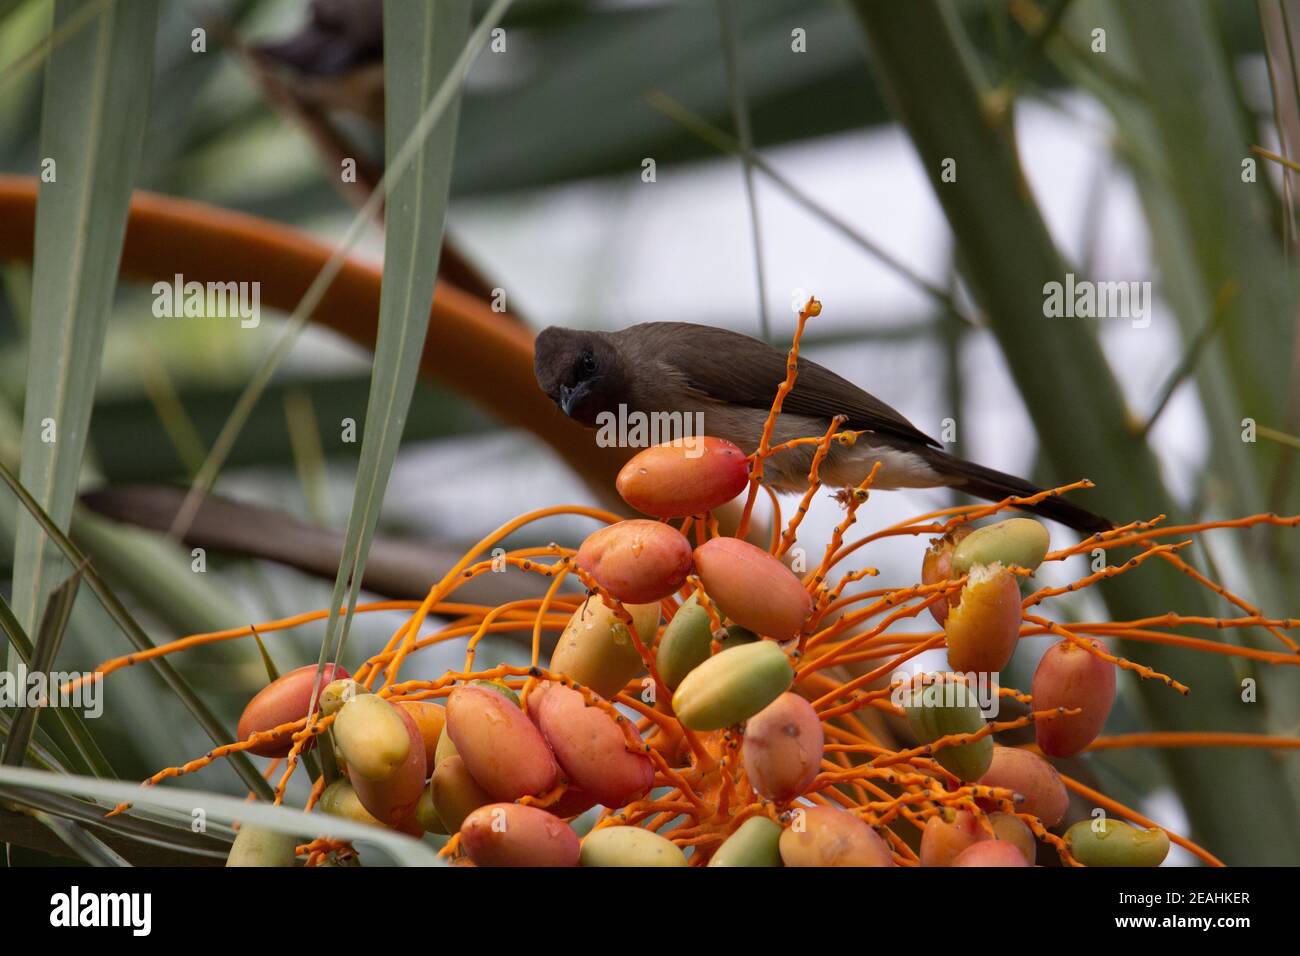 Gemeiner Bulbul (Pycnonotus barbatus) Ein gewöhnlicher Bulbul in einer orangefarbenen und roten Dattelpalme Baum mit Palmenblättern im Hintergrund Stockfoto